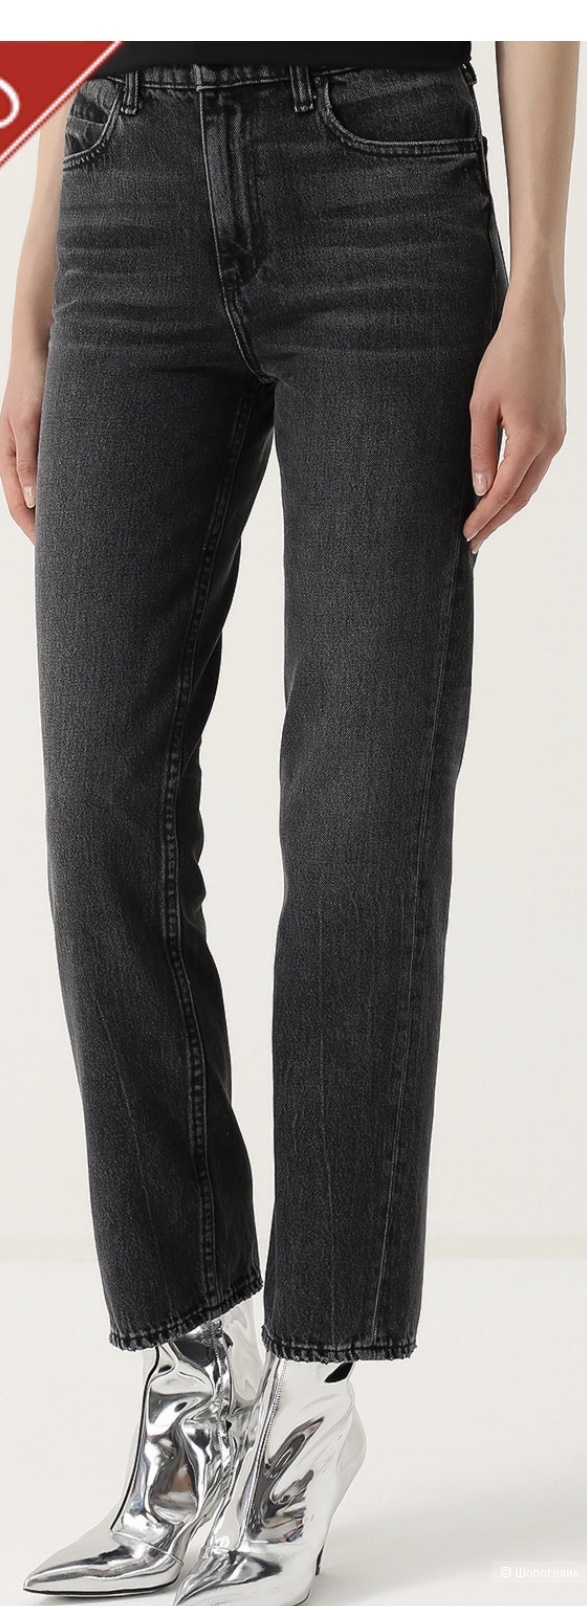 Alexander Wang джинсы , размер 27